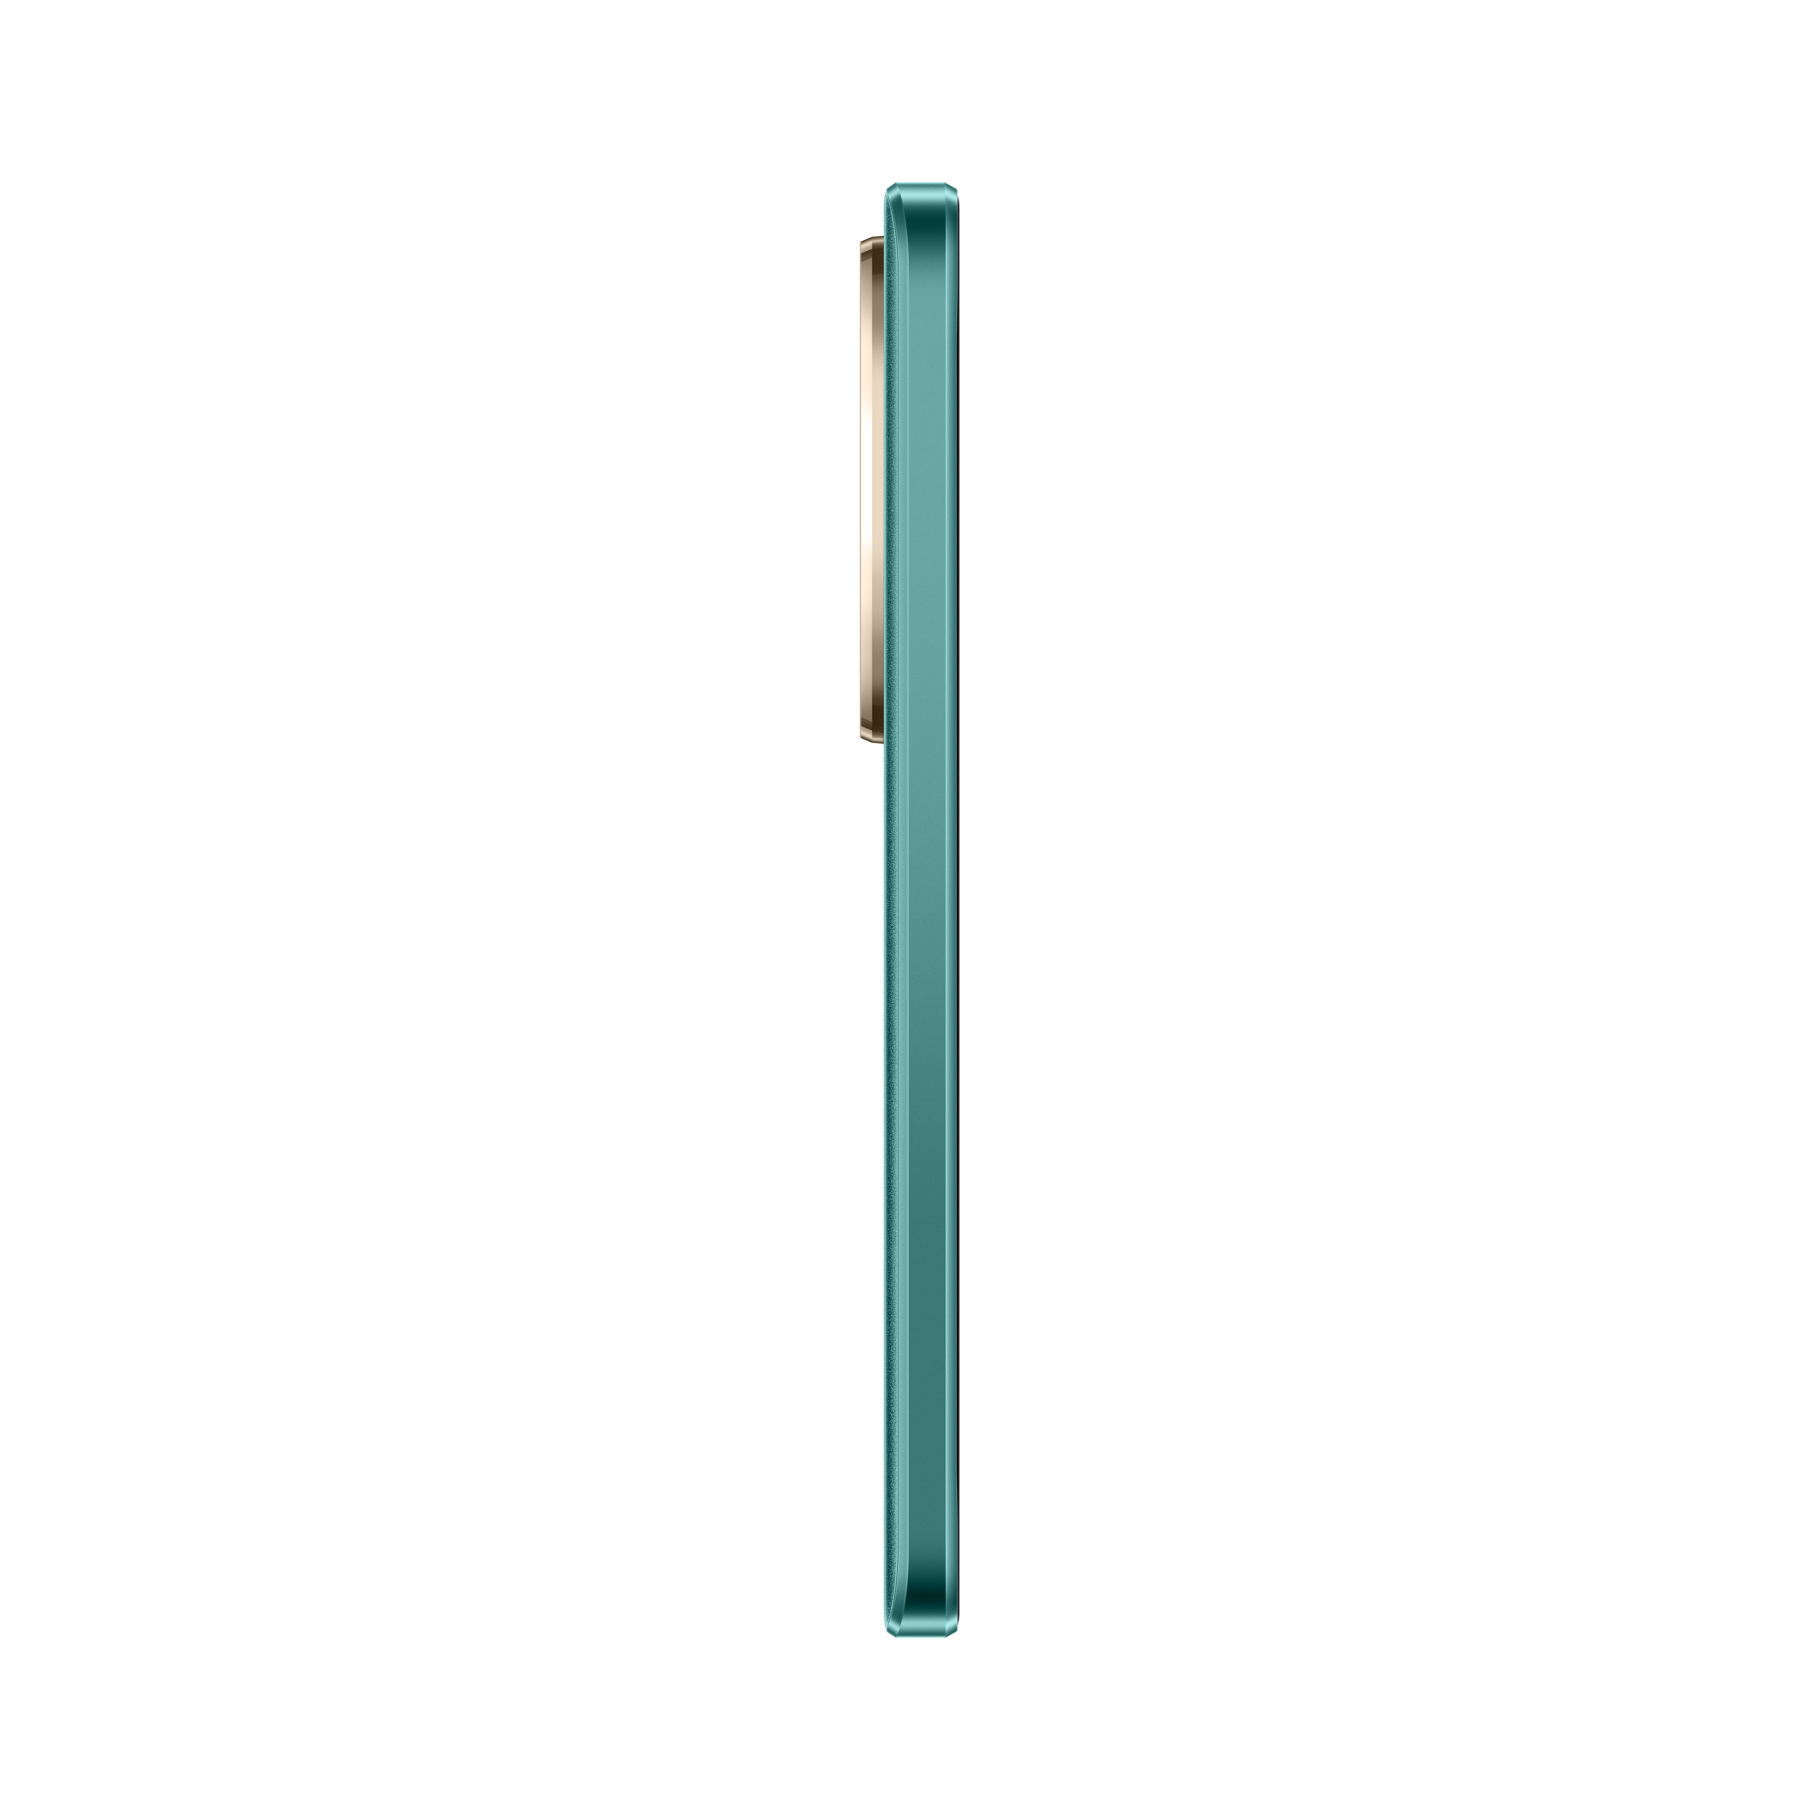 Huawei Teléfono Celular Nova 12i Verde, 256 GB